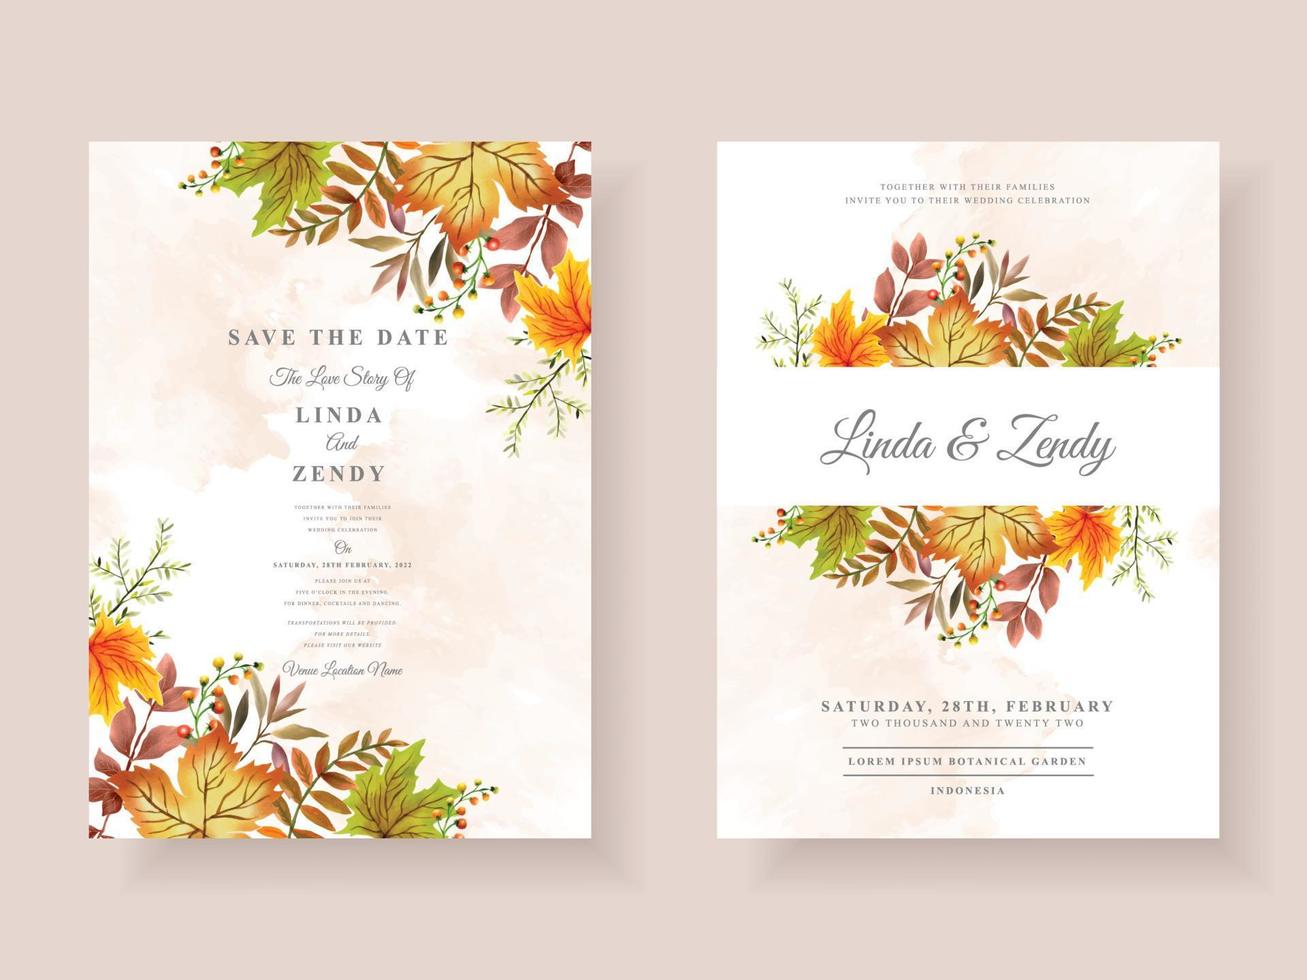 Wedding invitation card with autumn season theme vector